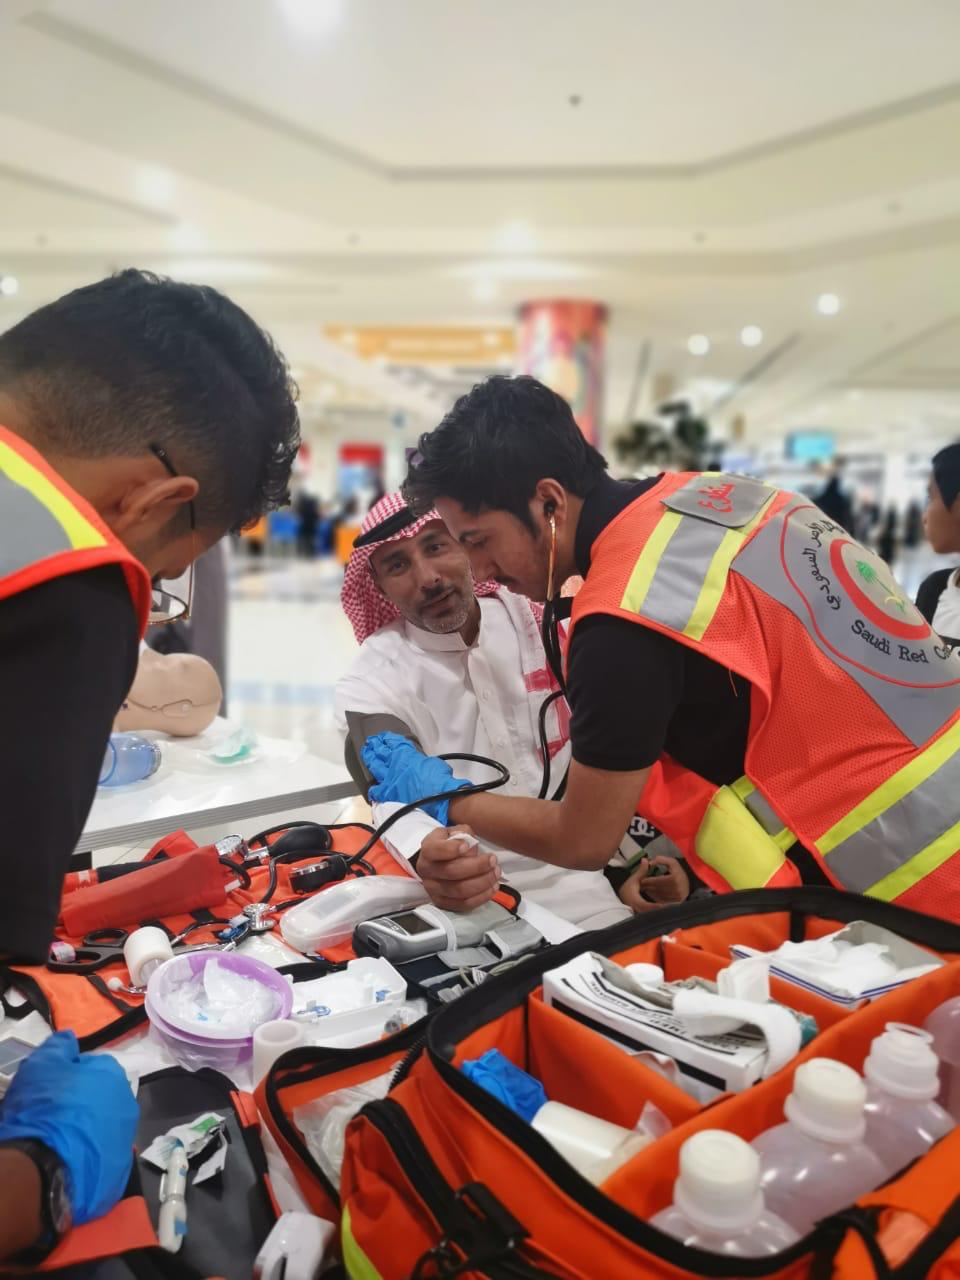 هيئة الهلال الأحمر السعودي بالمدينة تحتفي باليوم العالمي للتطوع